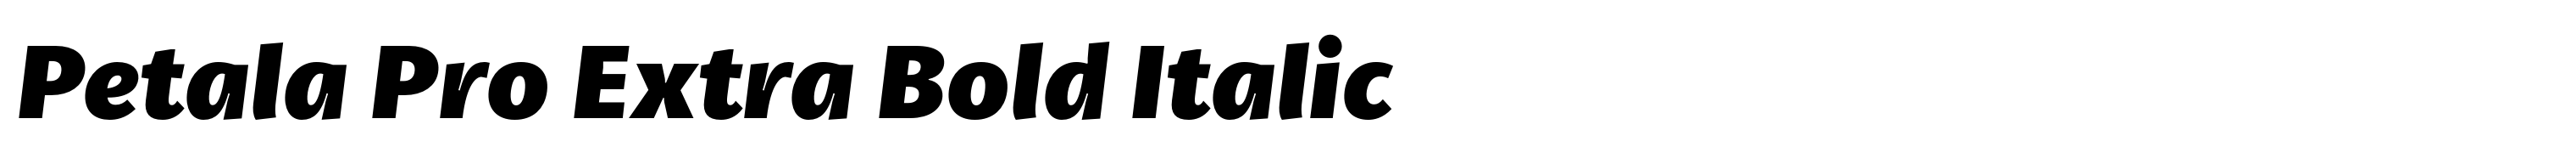 Petala Pro Extra Bold Italic